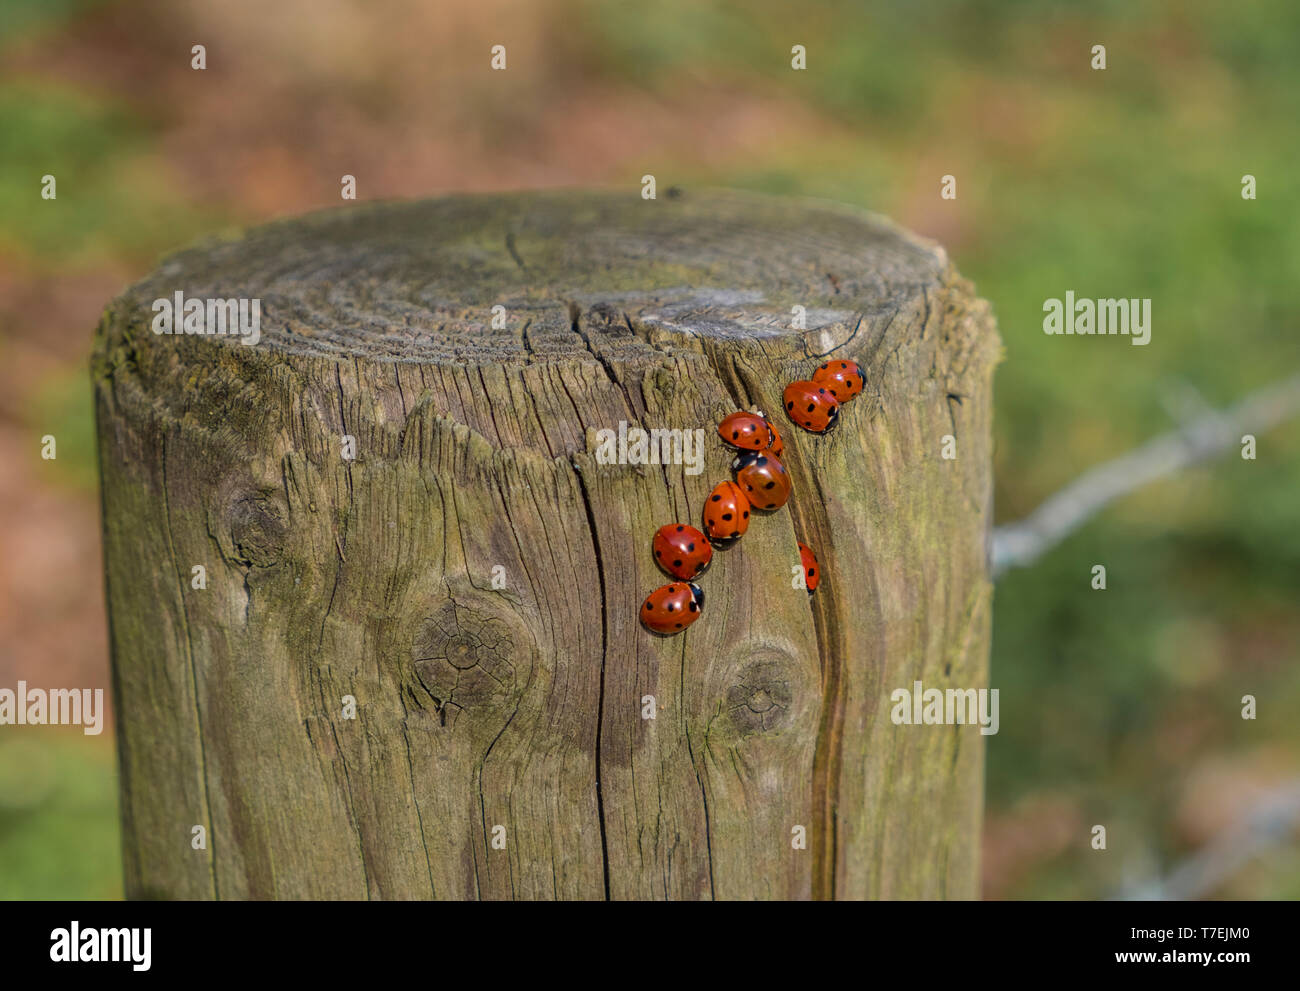 7 Spot mariquitas en primavera emerge de una grieta en un vallado donde han hibernado. Foto de stock